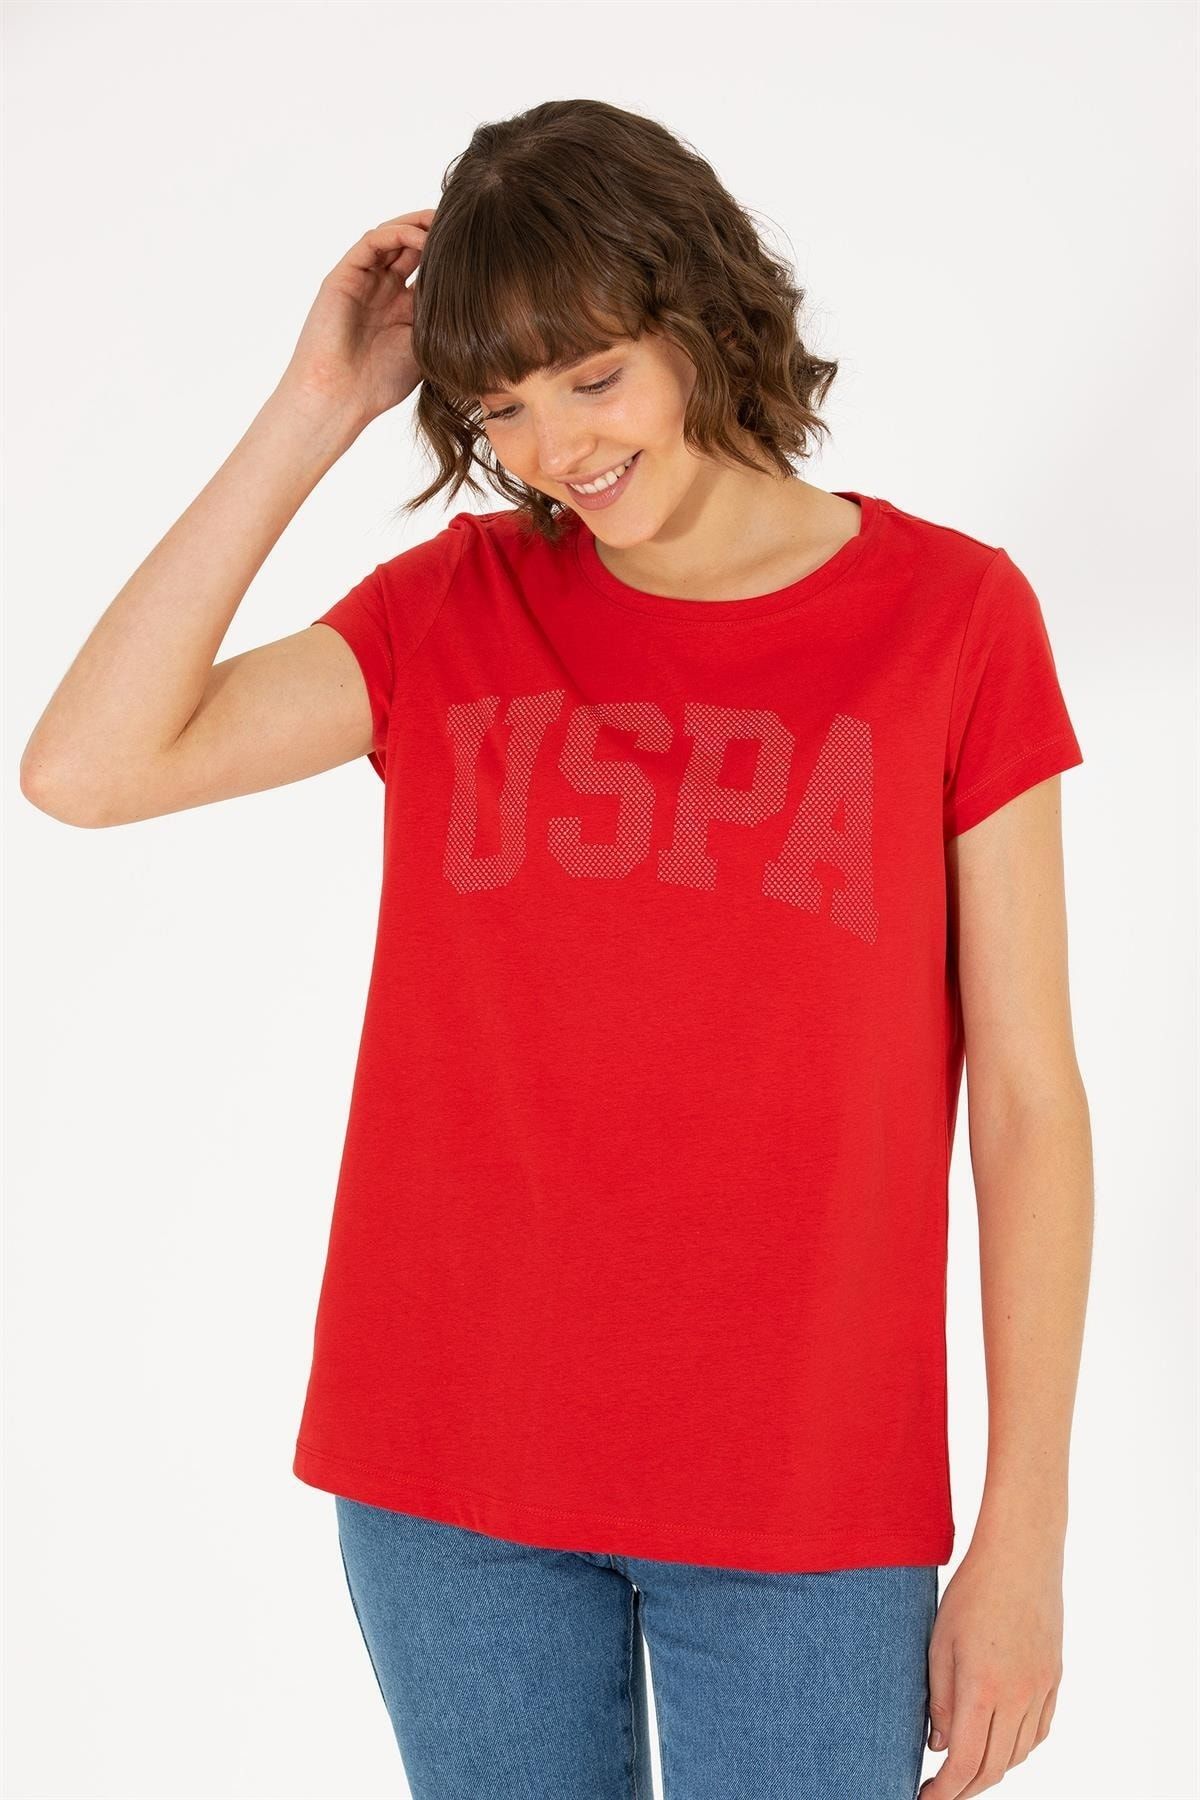 U.S. Polo Assn. Kadın Sıfır Yaka Logo Baskılı T-shirt 1567304 Kırmızı